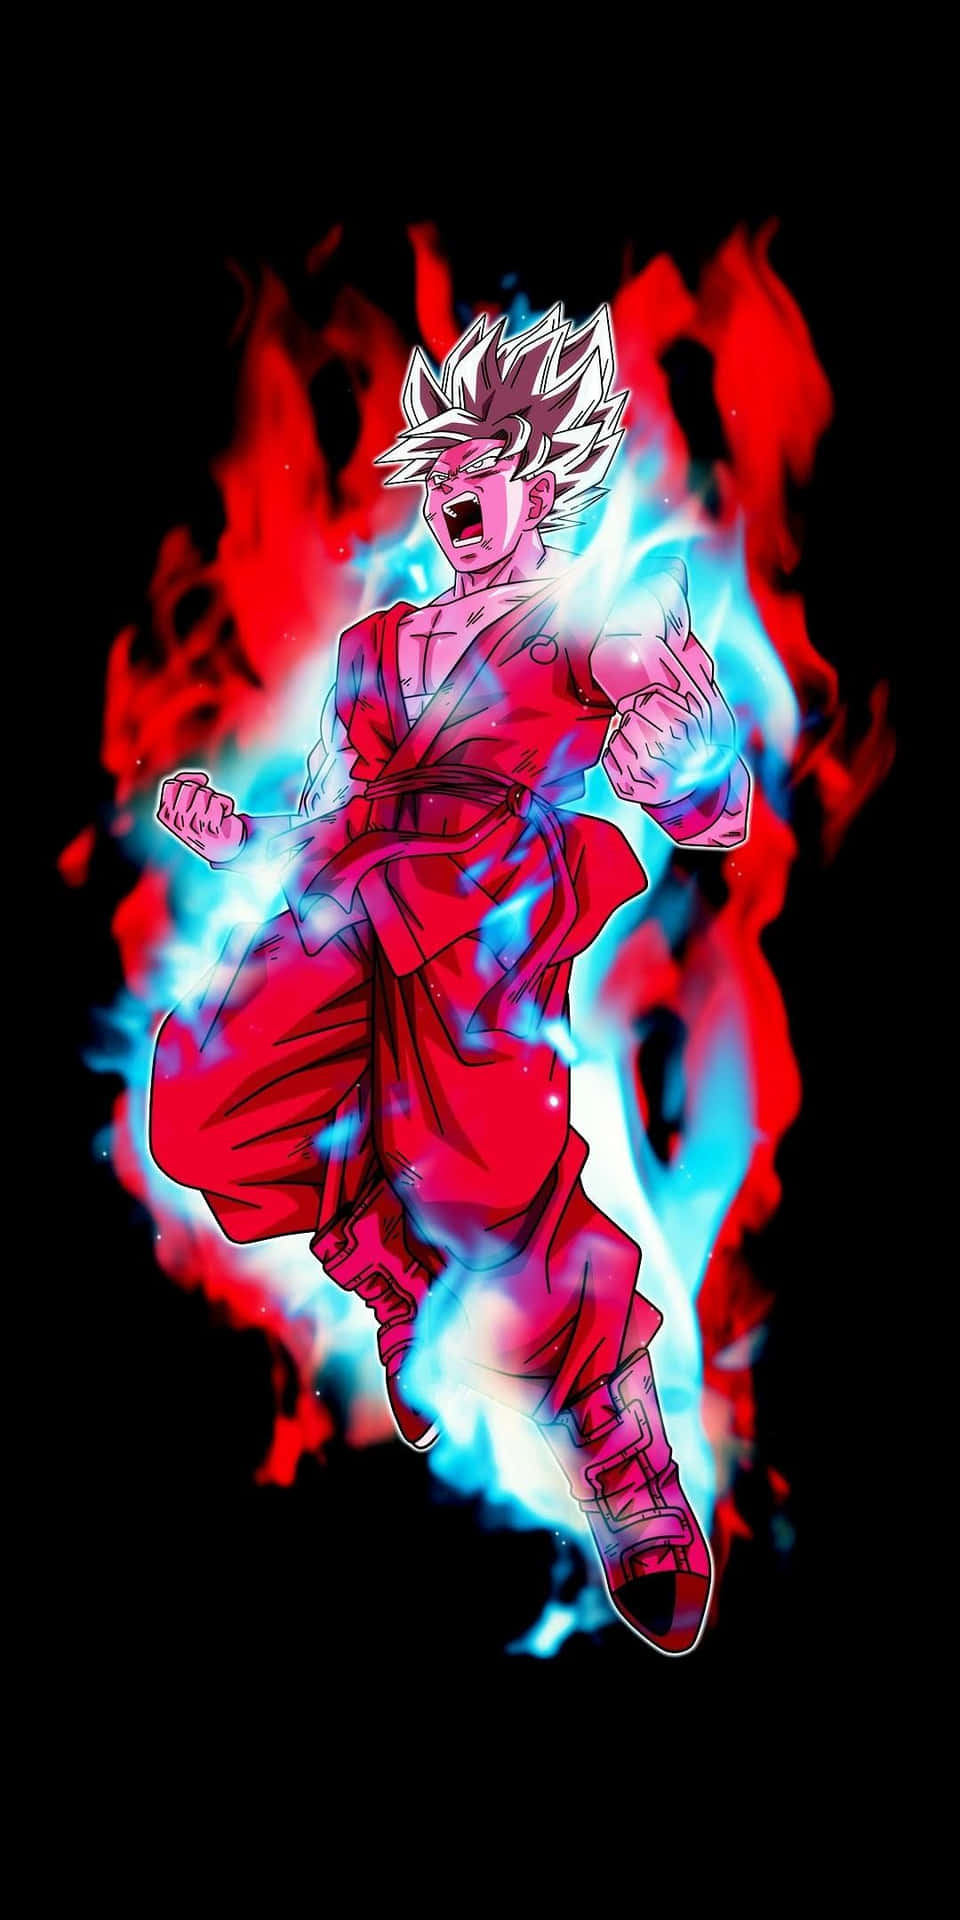 Amoled Background Goku Red Blue Flames